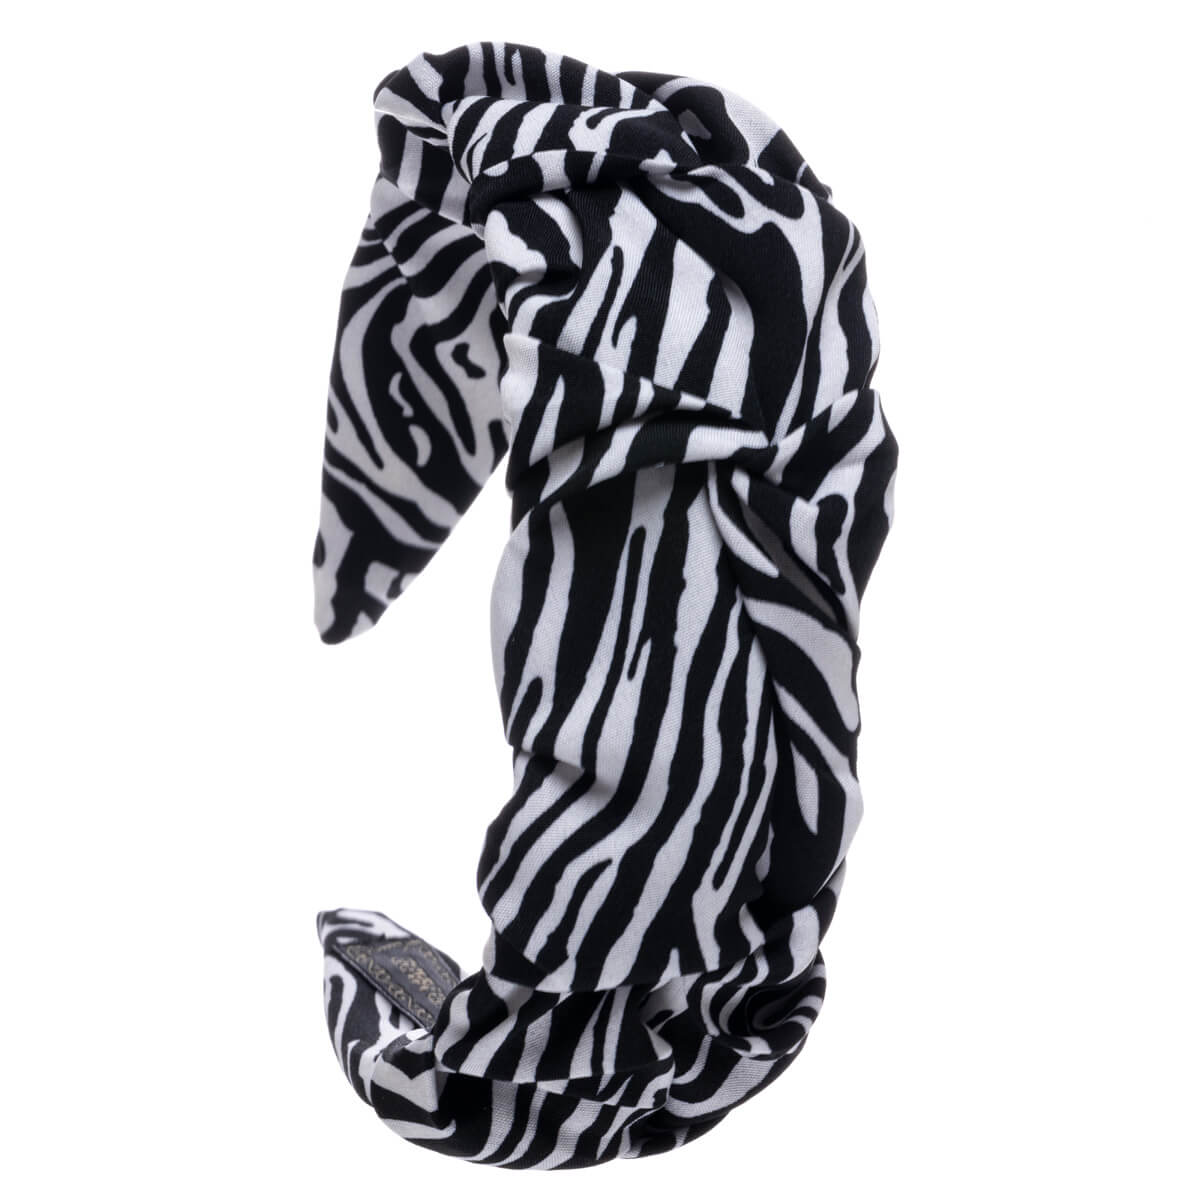 Zebra animal wide hairband 5,5cm